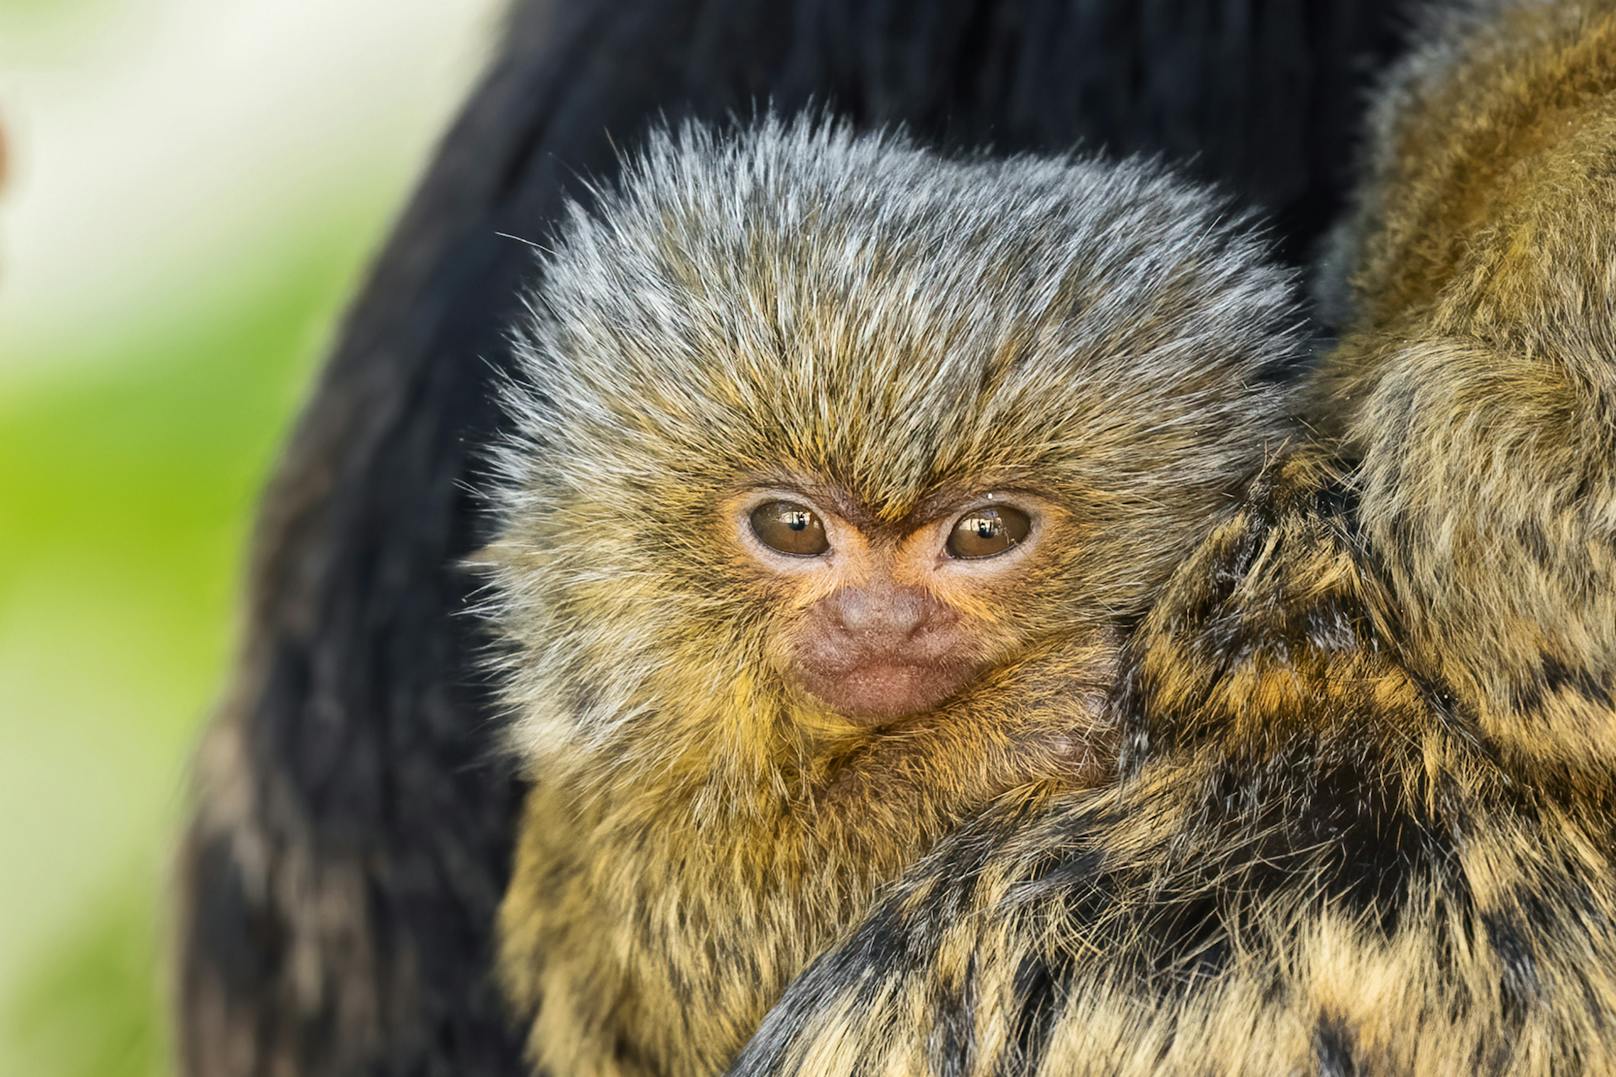 Der kleine Affe ist am 2. April zur Welt gekommen. Bei seiner Geburt war er so groß wie ein Daumen, seither ist er aber schon kräftig gewachsen.